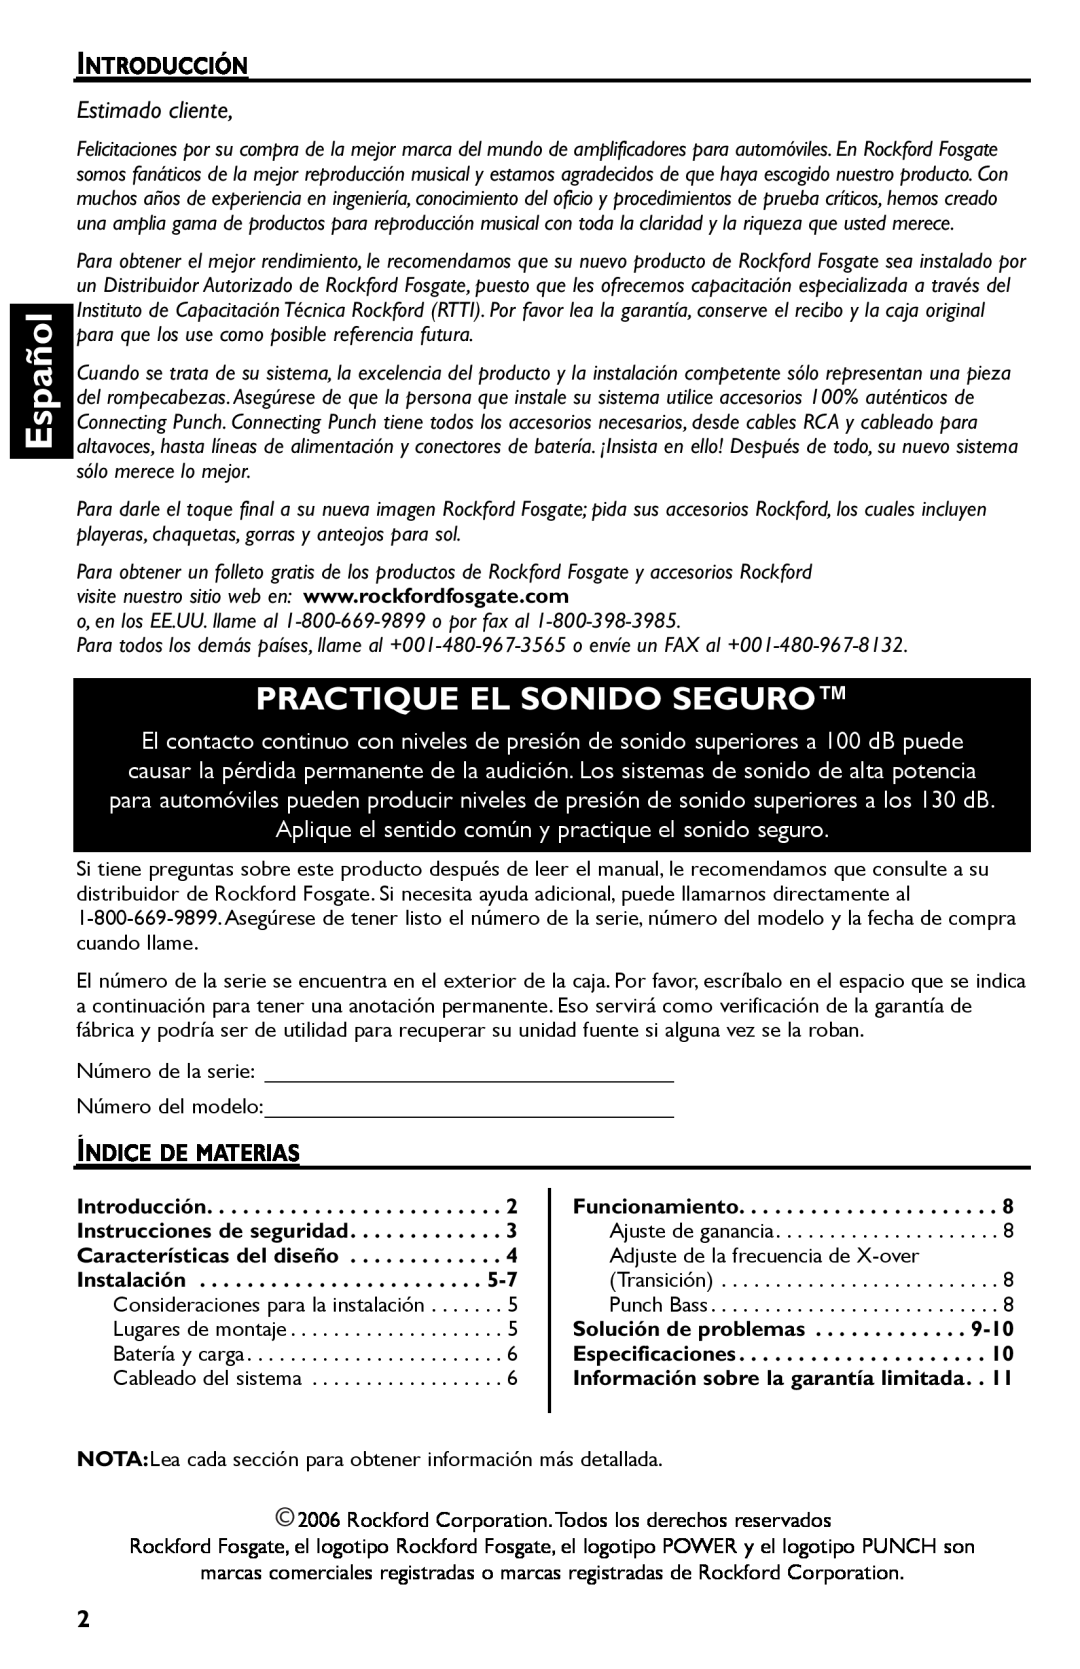 Rockford Fosgate R300-4 manual Español, Practique El Sonido Seguro, Estimado cliente 